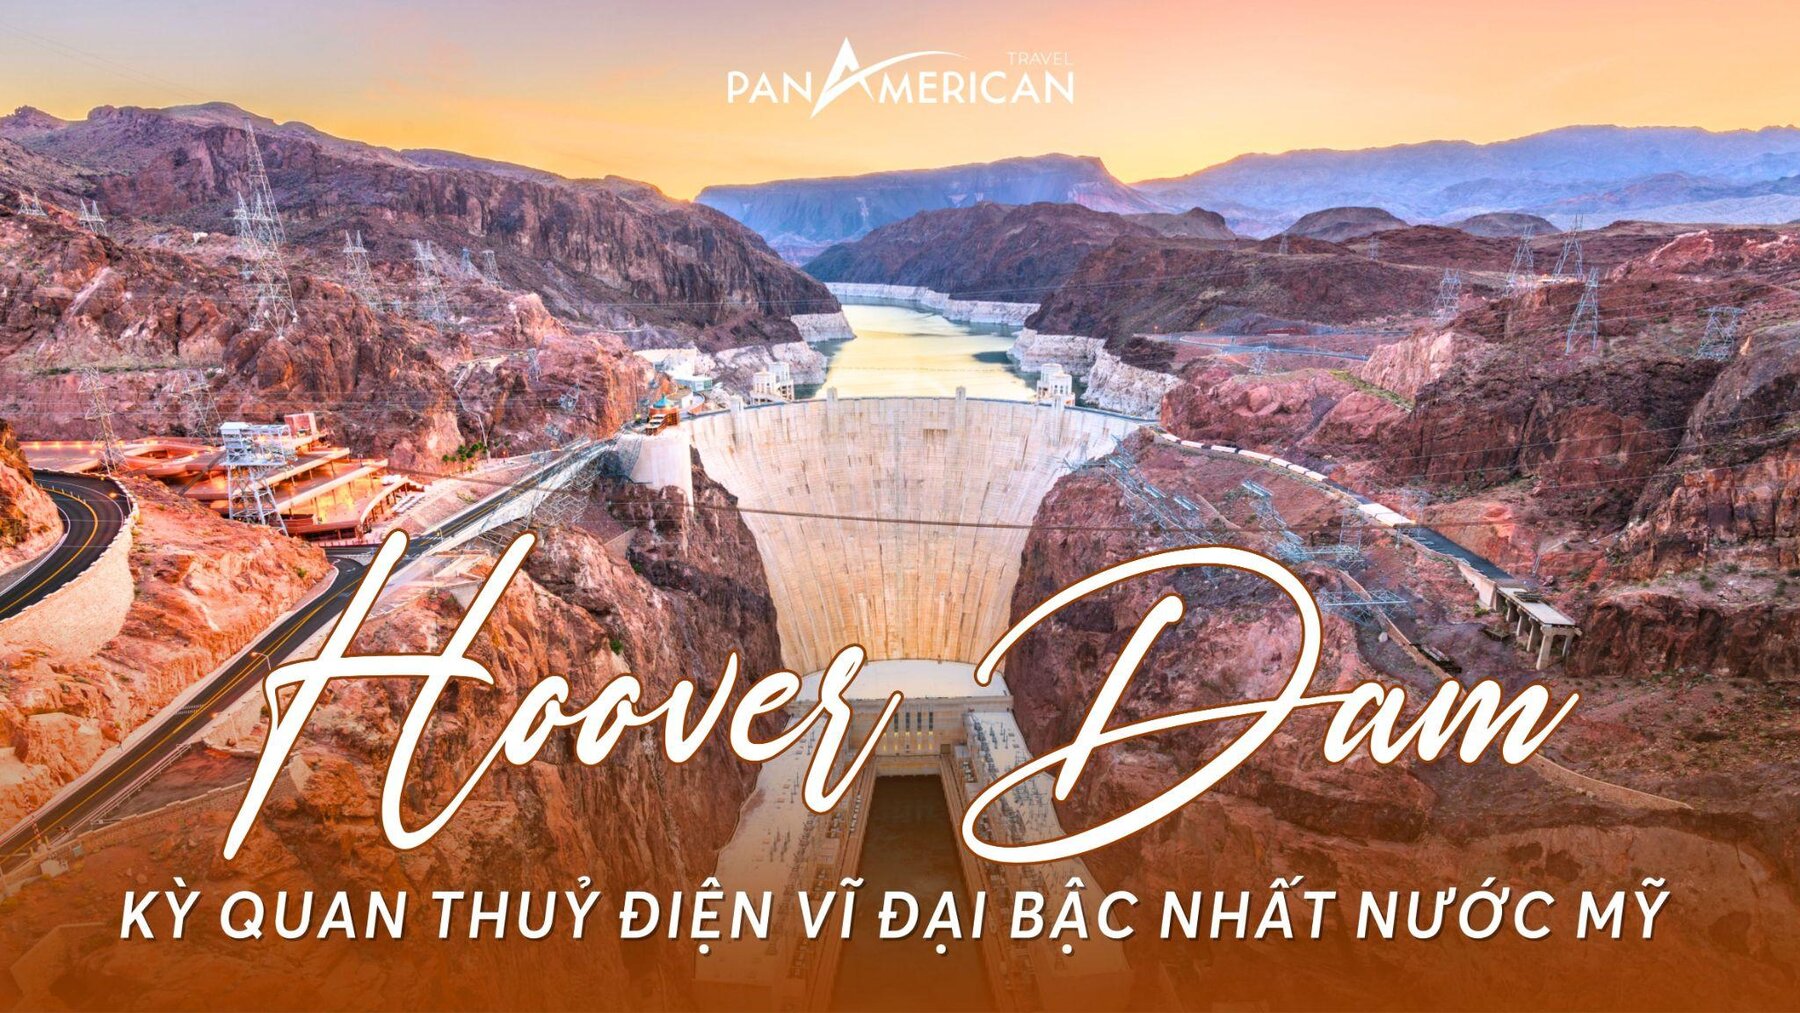 Hoover Dam - Kỳ quan thuỷ điện vĩ đại bậc nhất nước Mỹ 